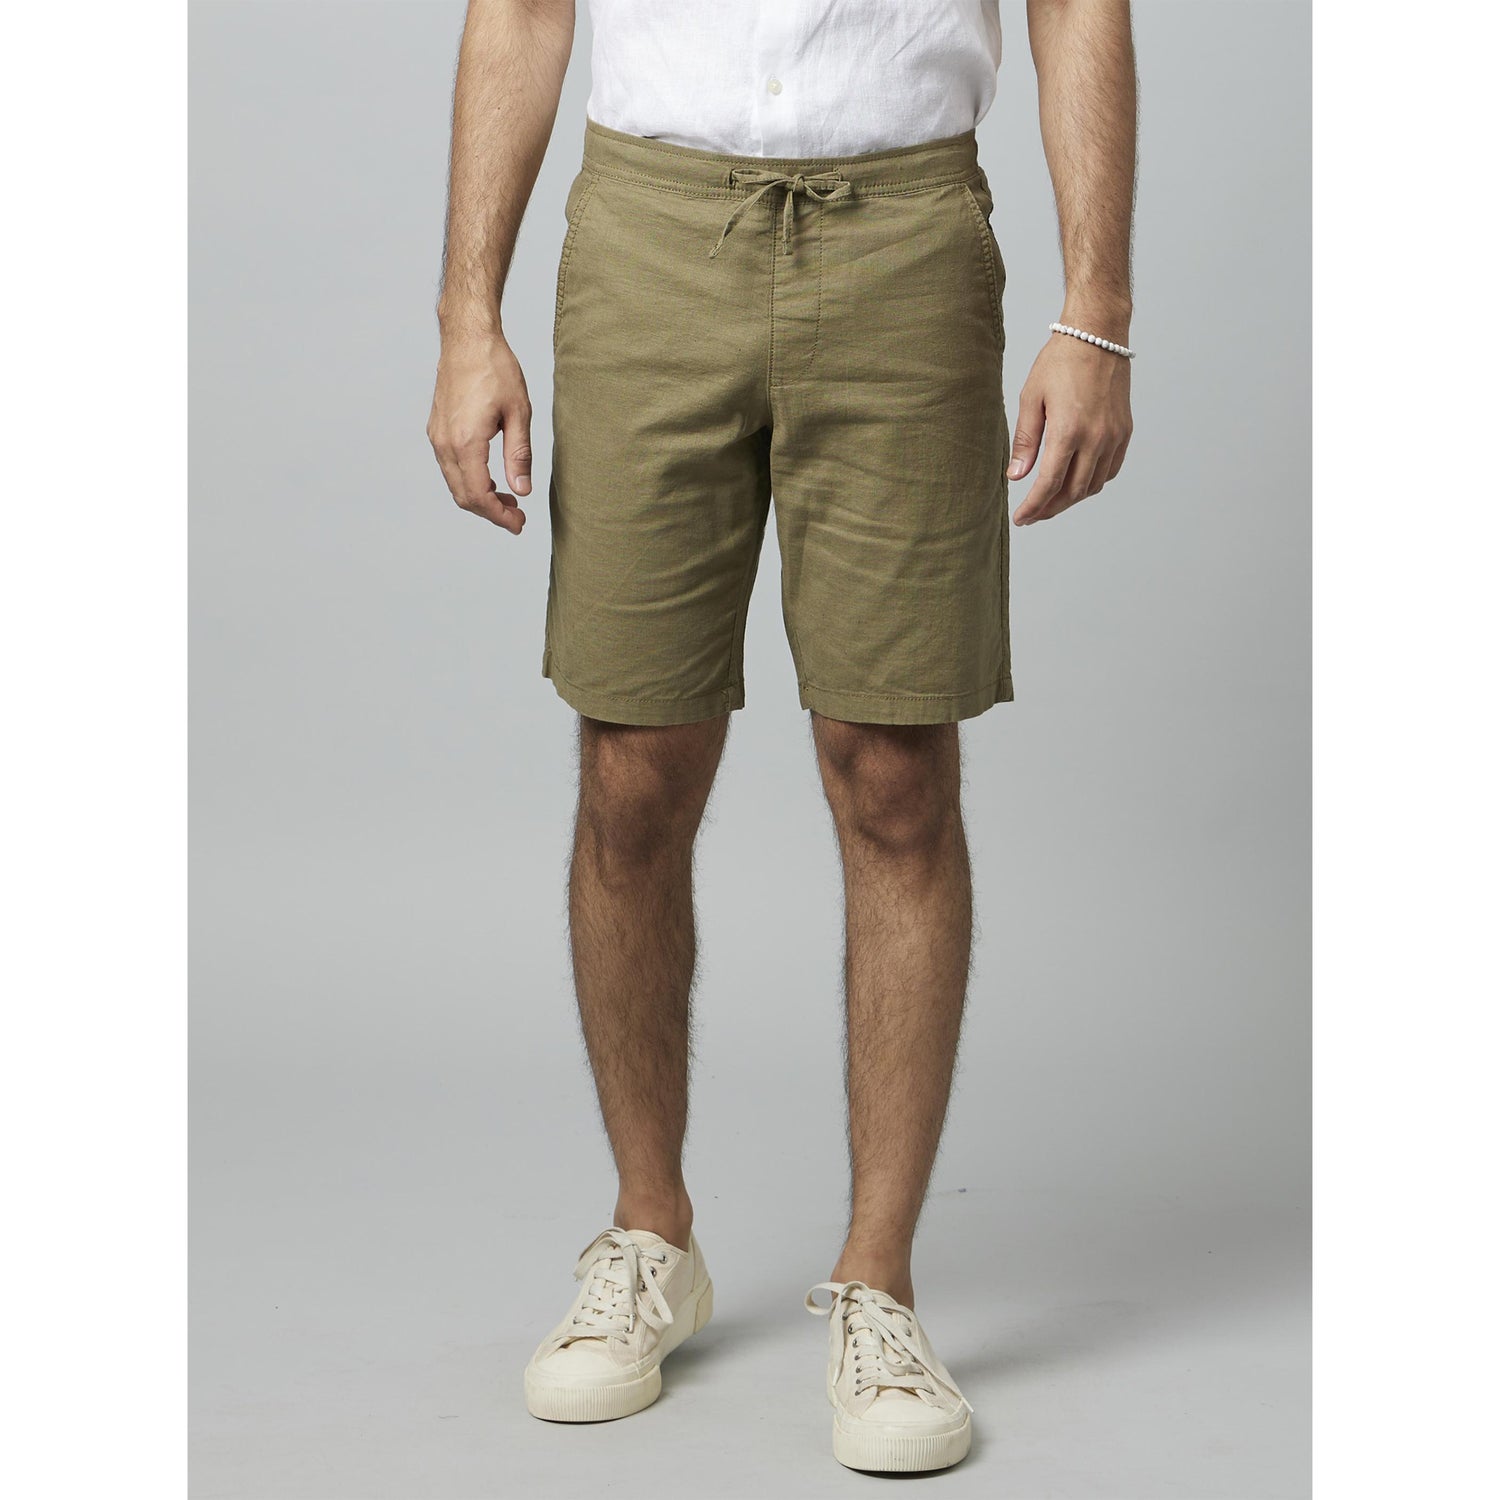 Khaki Solid Linen Shorts (DOLINCOBM)